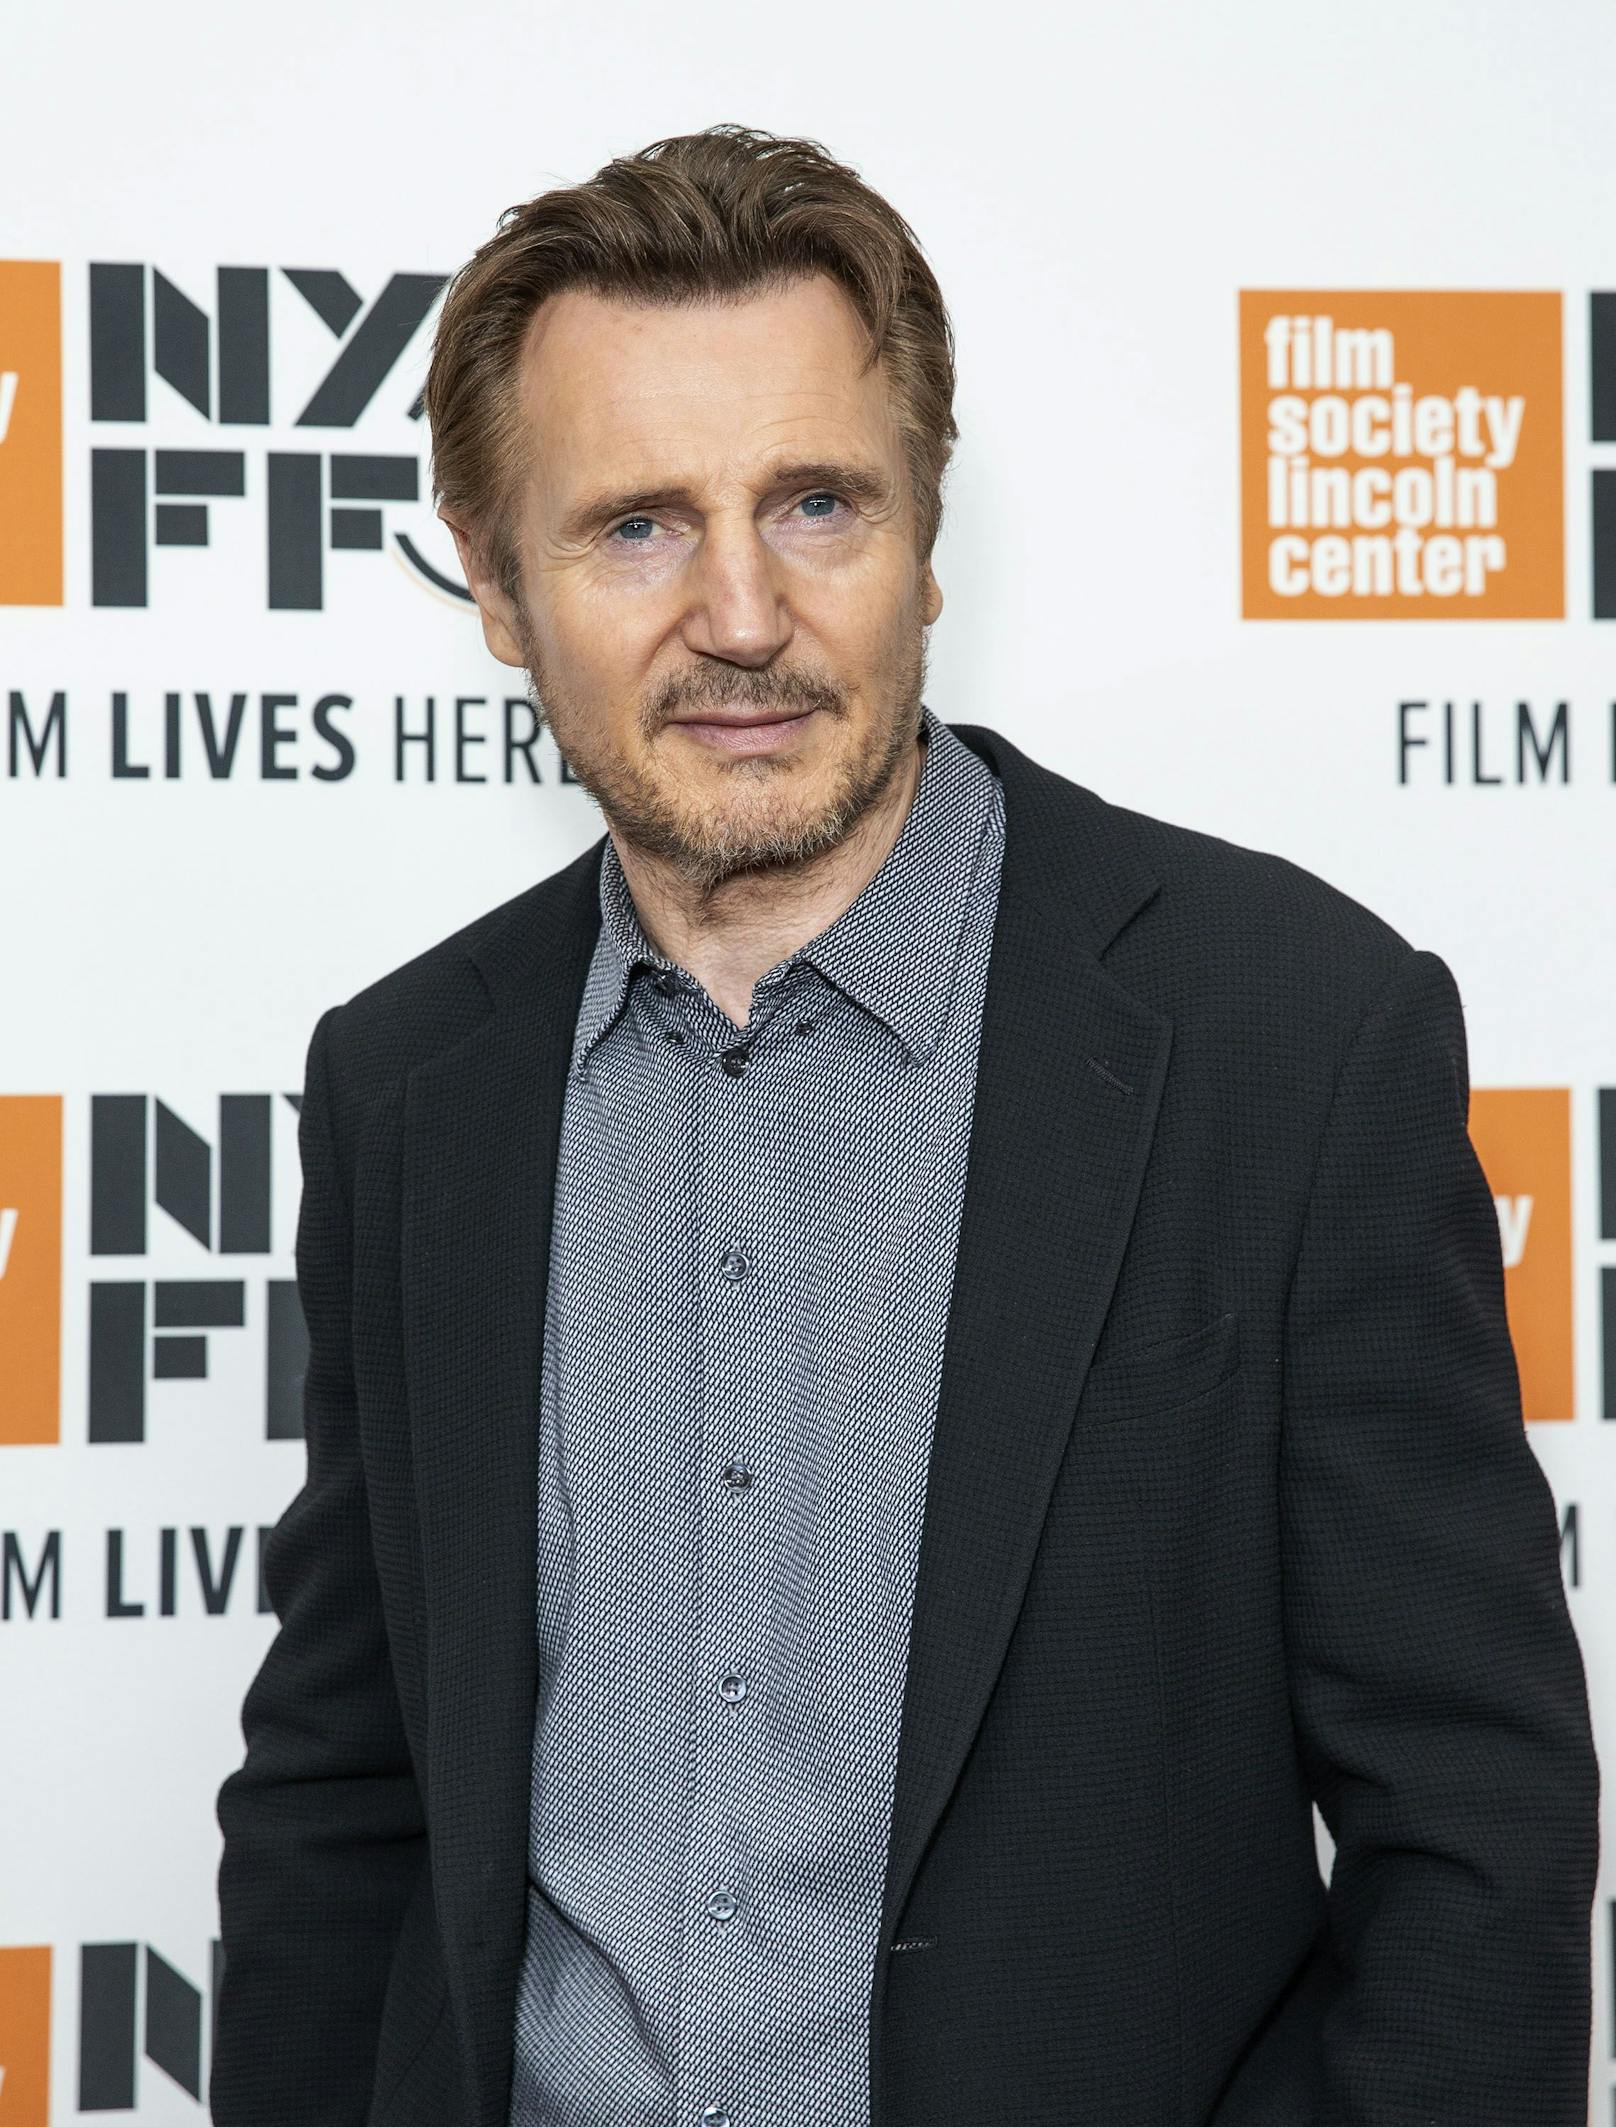 Auch Privat erlitt Neeson 2009 einen schweren Schicksalsschlag. Seine Ehefrau Natascha Richardson erlag nach einem Skiunfall einer Hirnblutung. Zuletzt sah man den 70-Jährigen in der Star-Wars-Miniserie "Obi-Wan Kenobi".